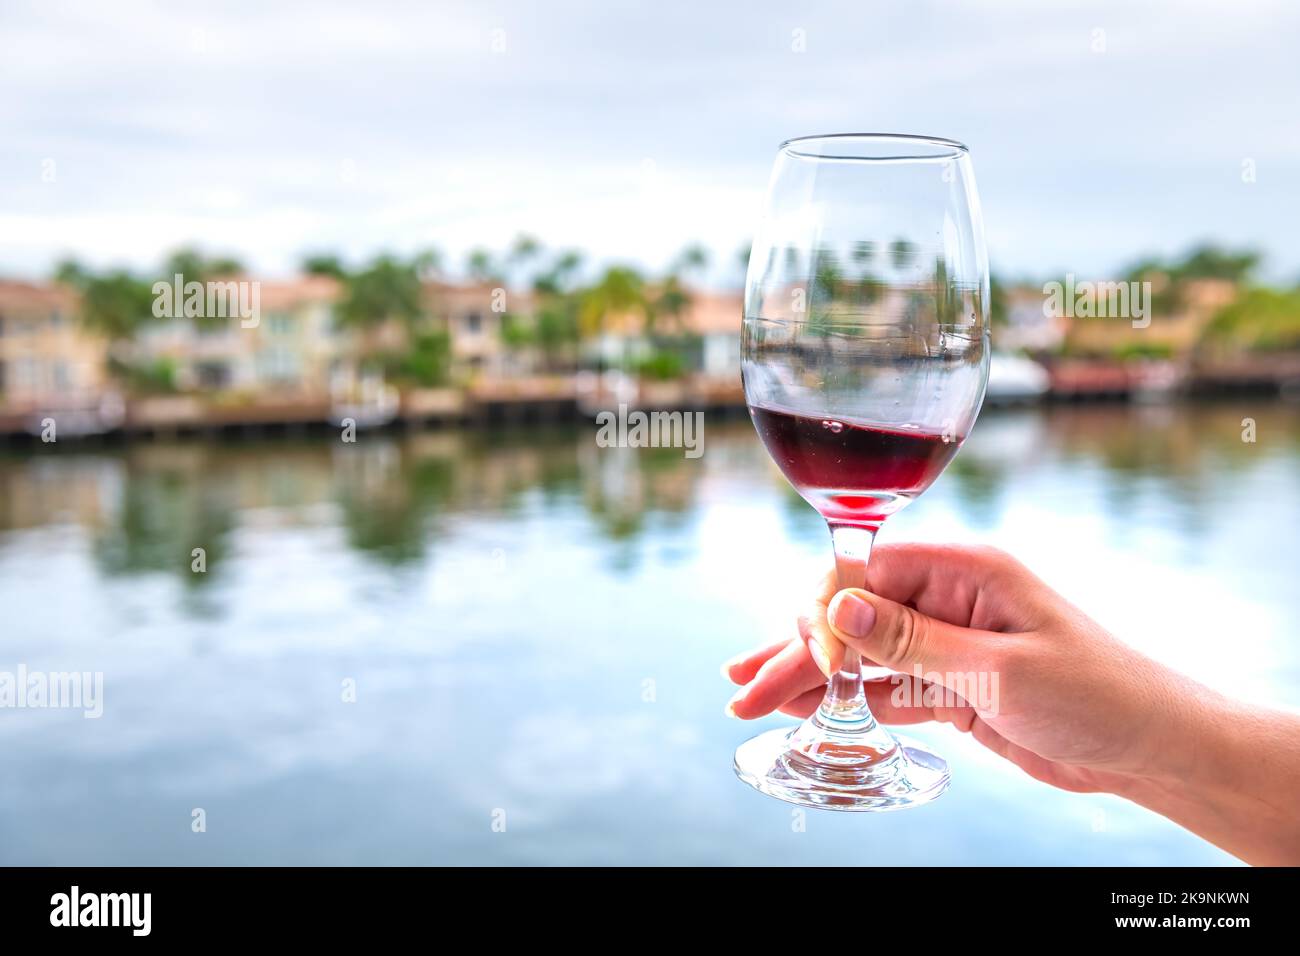 Femme personne tenant la main, toaster avec verre de vin rouge français Cotes du Rhone sur maison de luxe en bord de mer balcon à Miami, Floride Banque D'Images